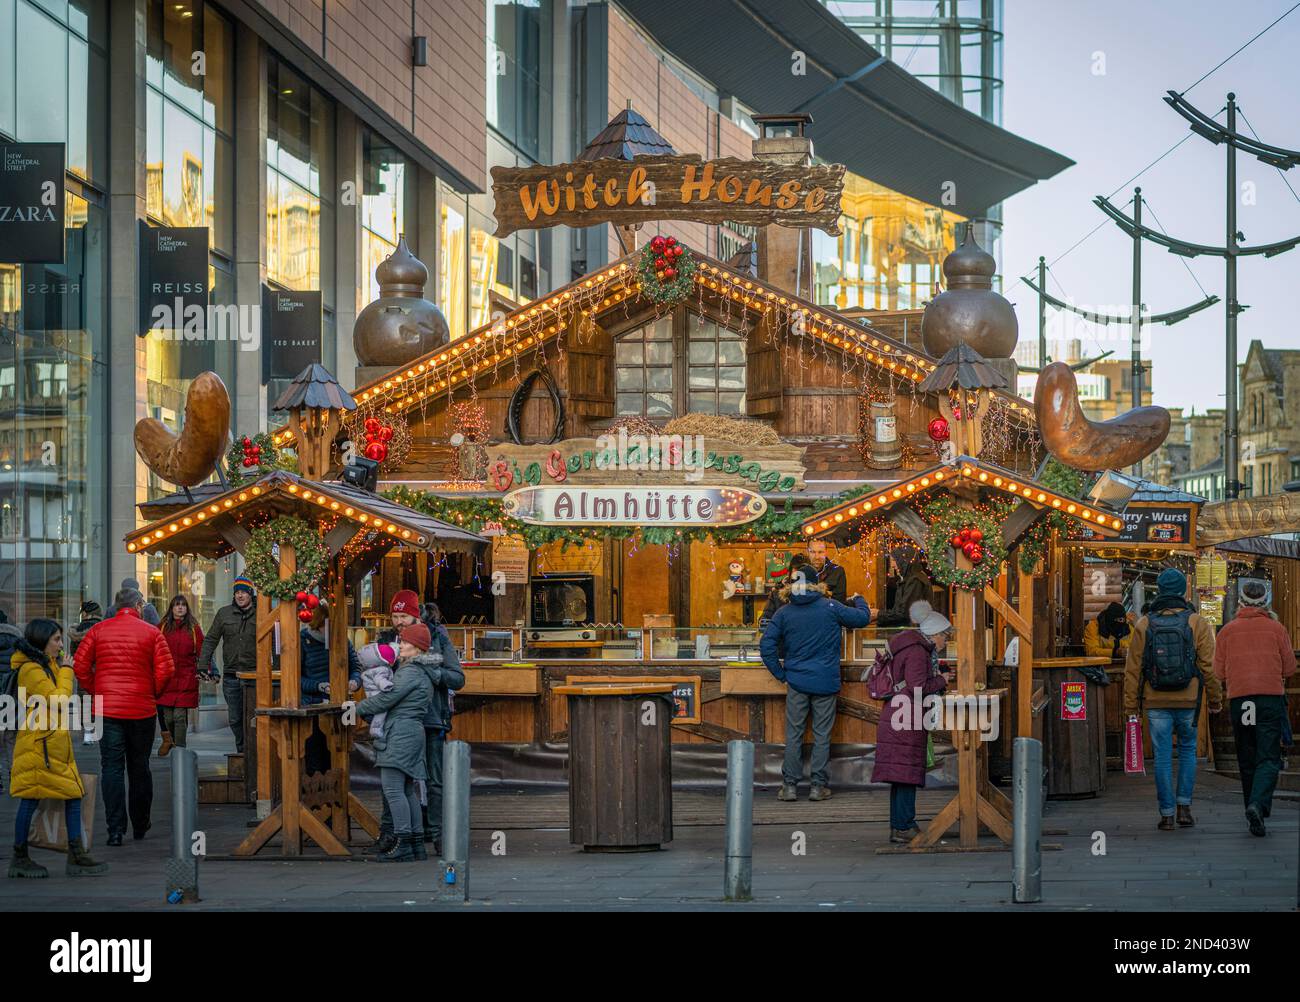 Grand chalet de style chalet en bois vendant de la bratwurst. Marchés de Noël de Manchester. ROYAUME-UNI Banque D'Images